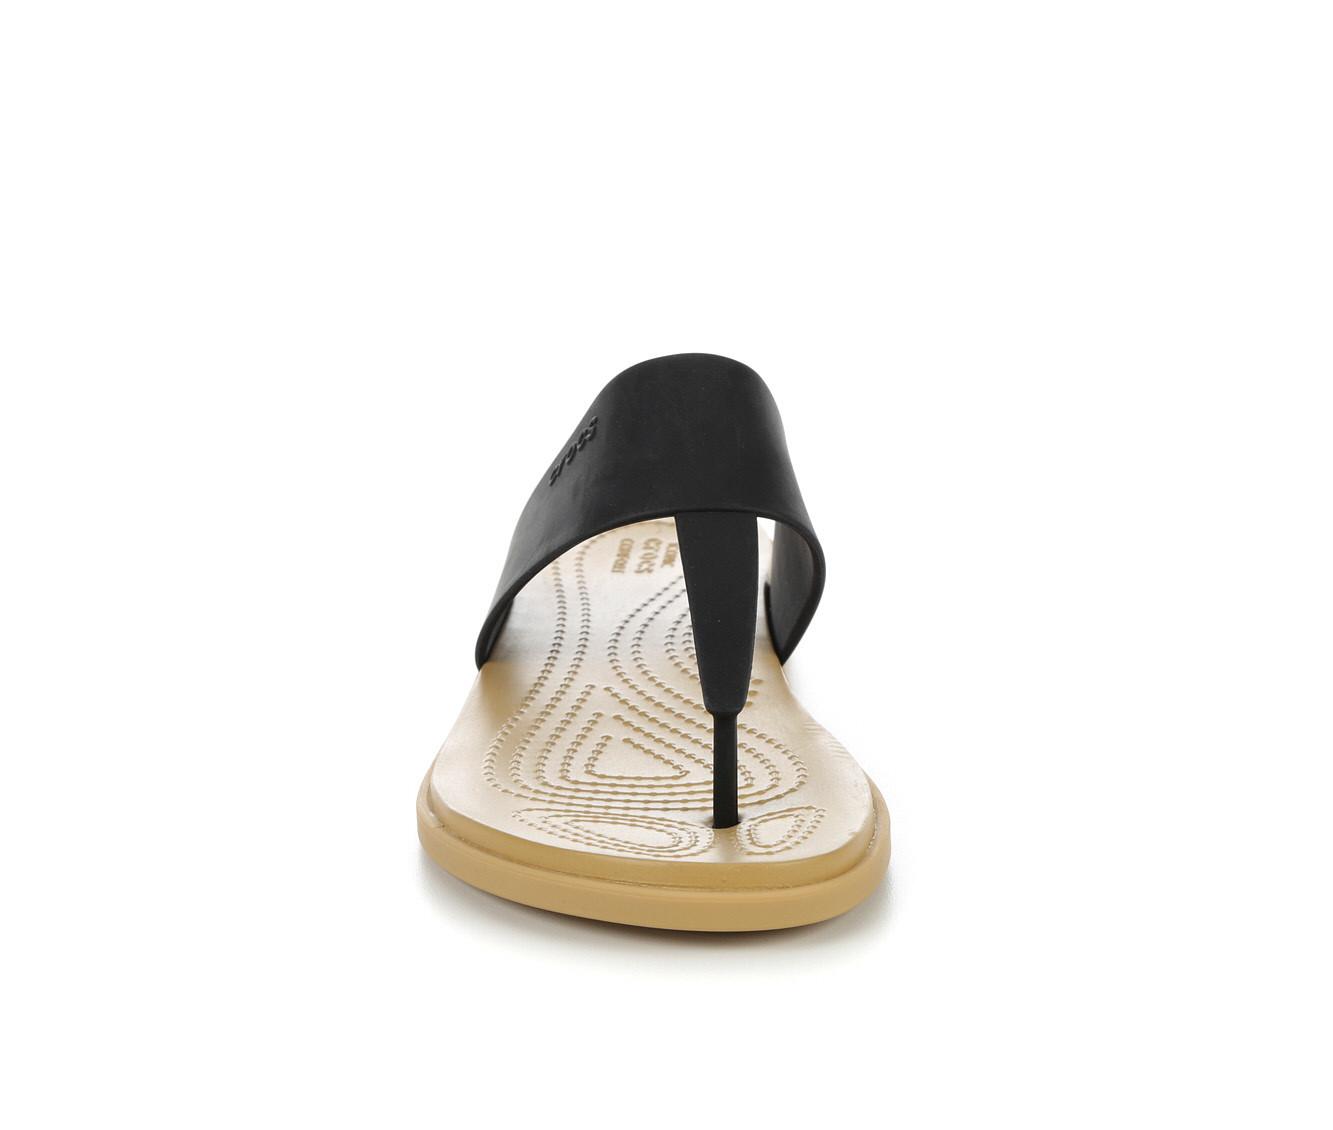 Women's Crocs Tulum Flip Sandals